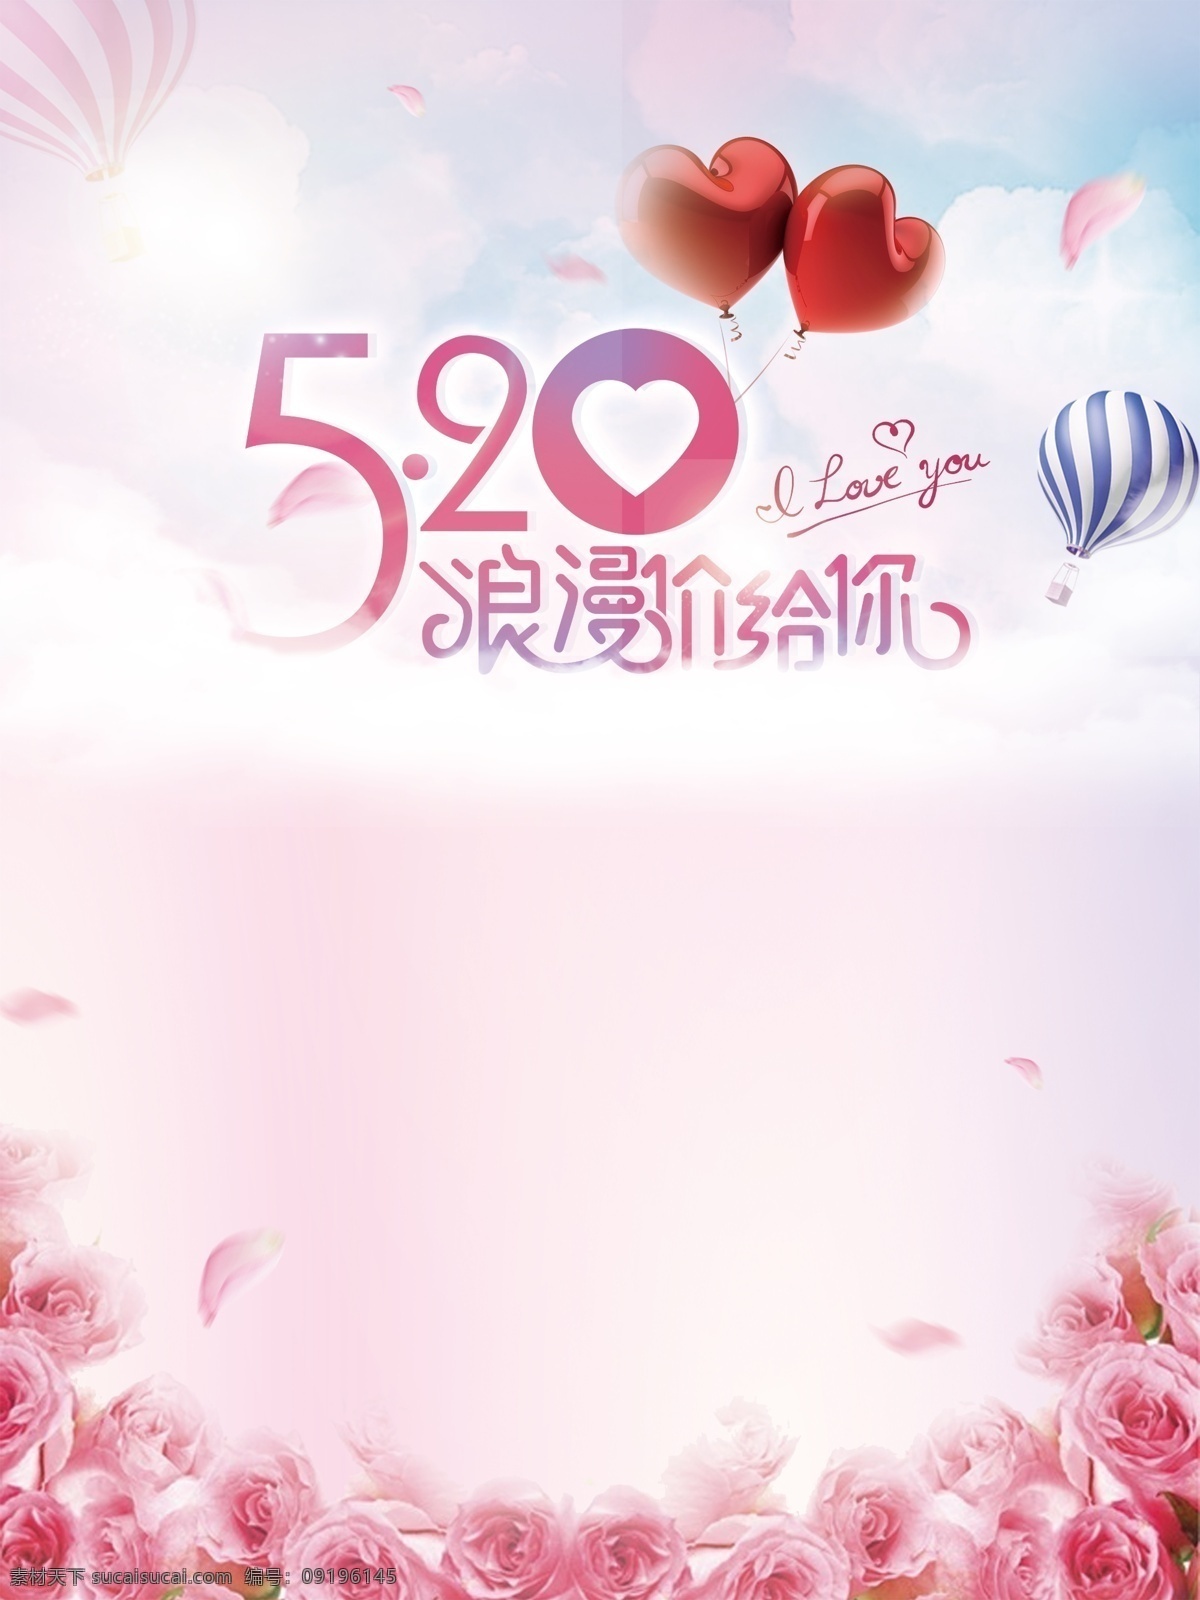 粉色 浪漫 花卉 气球 520 表白 背景 psd素材 情人节 花瓣 鲜花 520海报 浪漫价给你